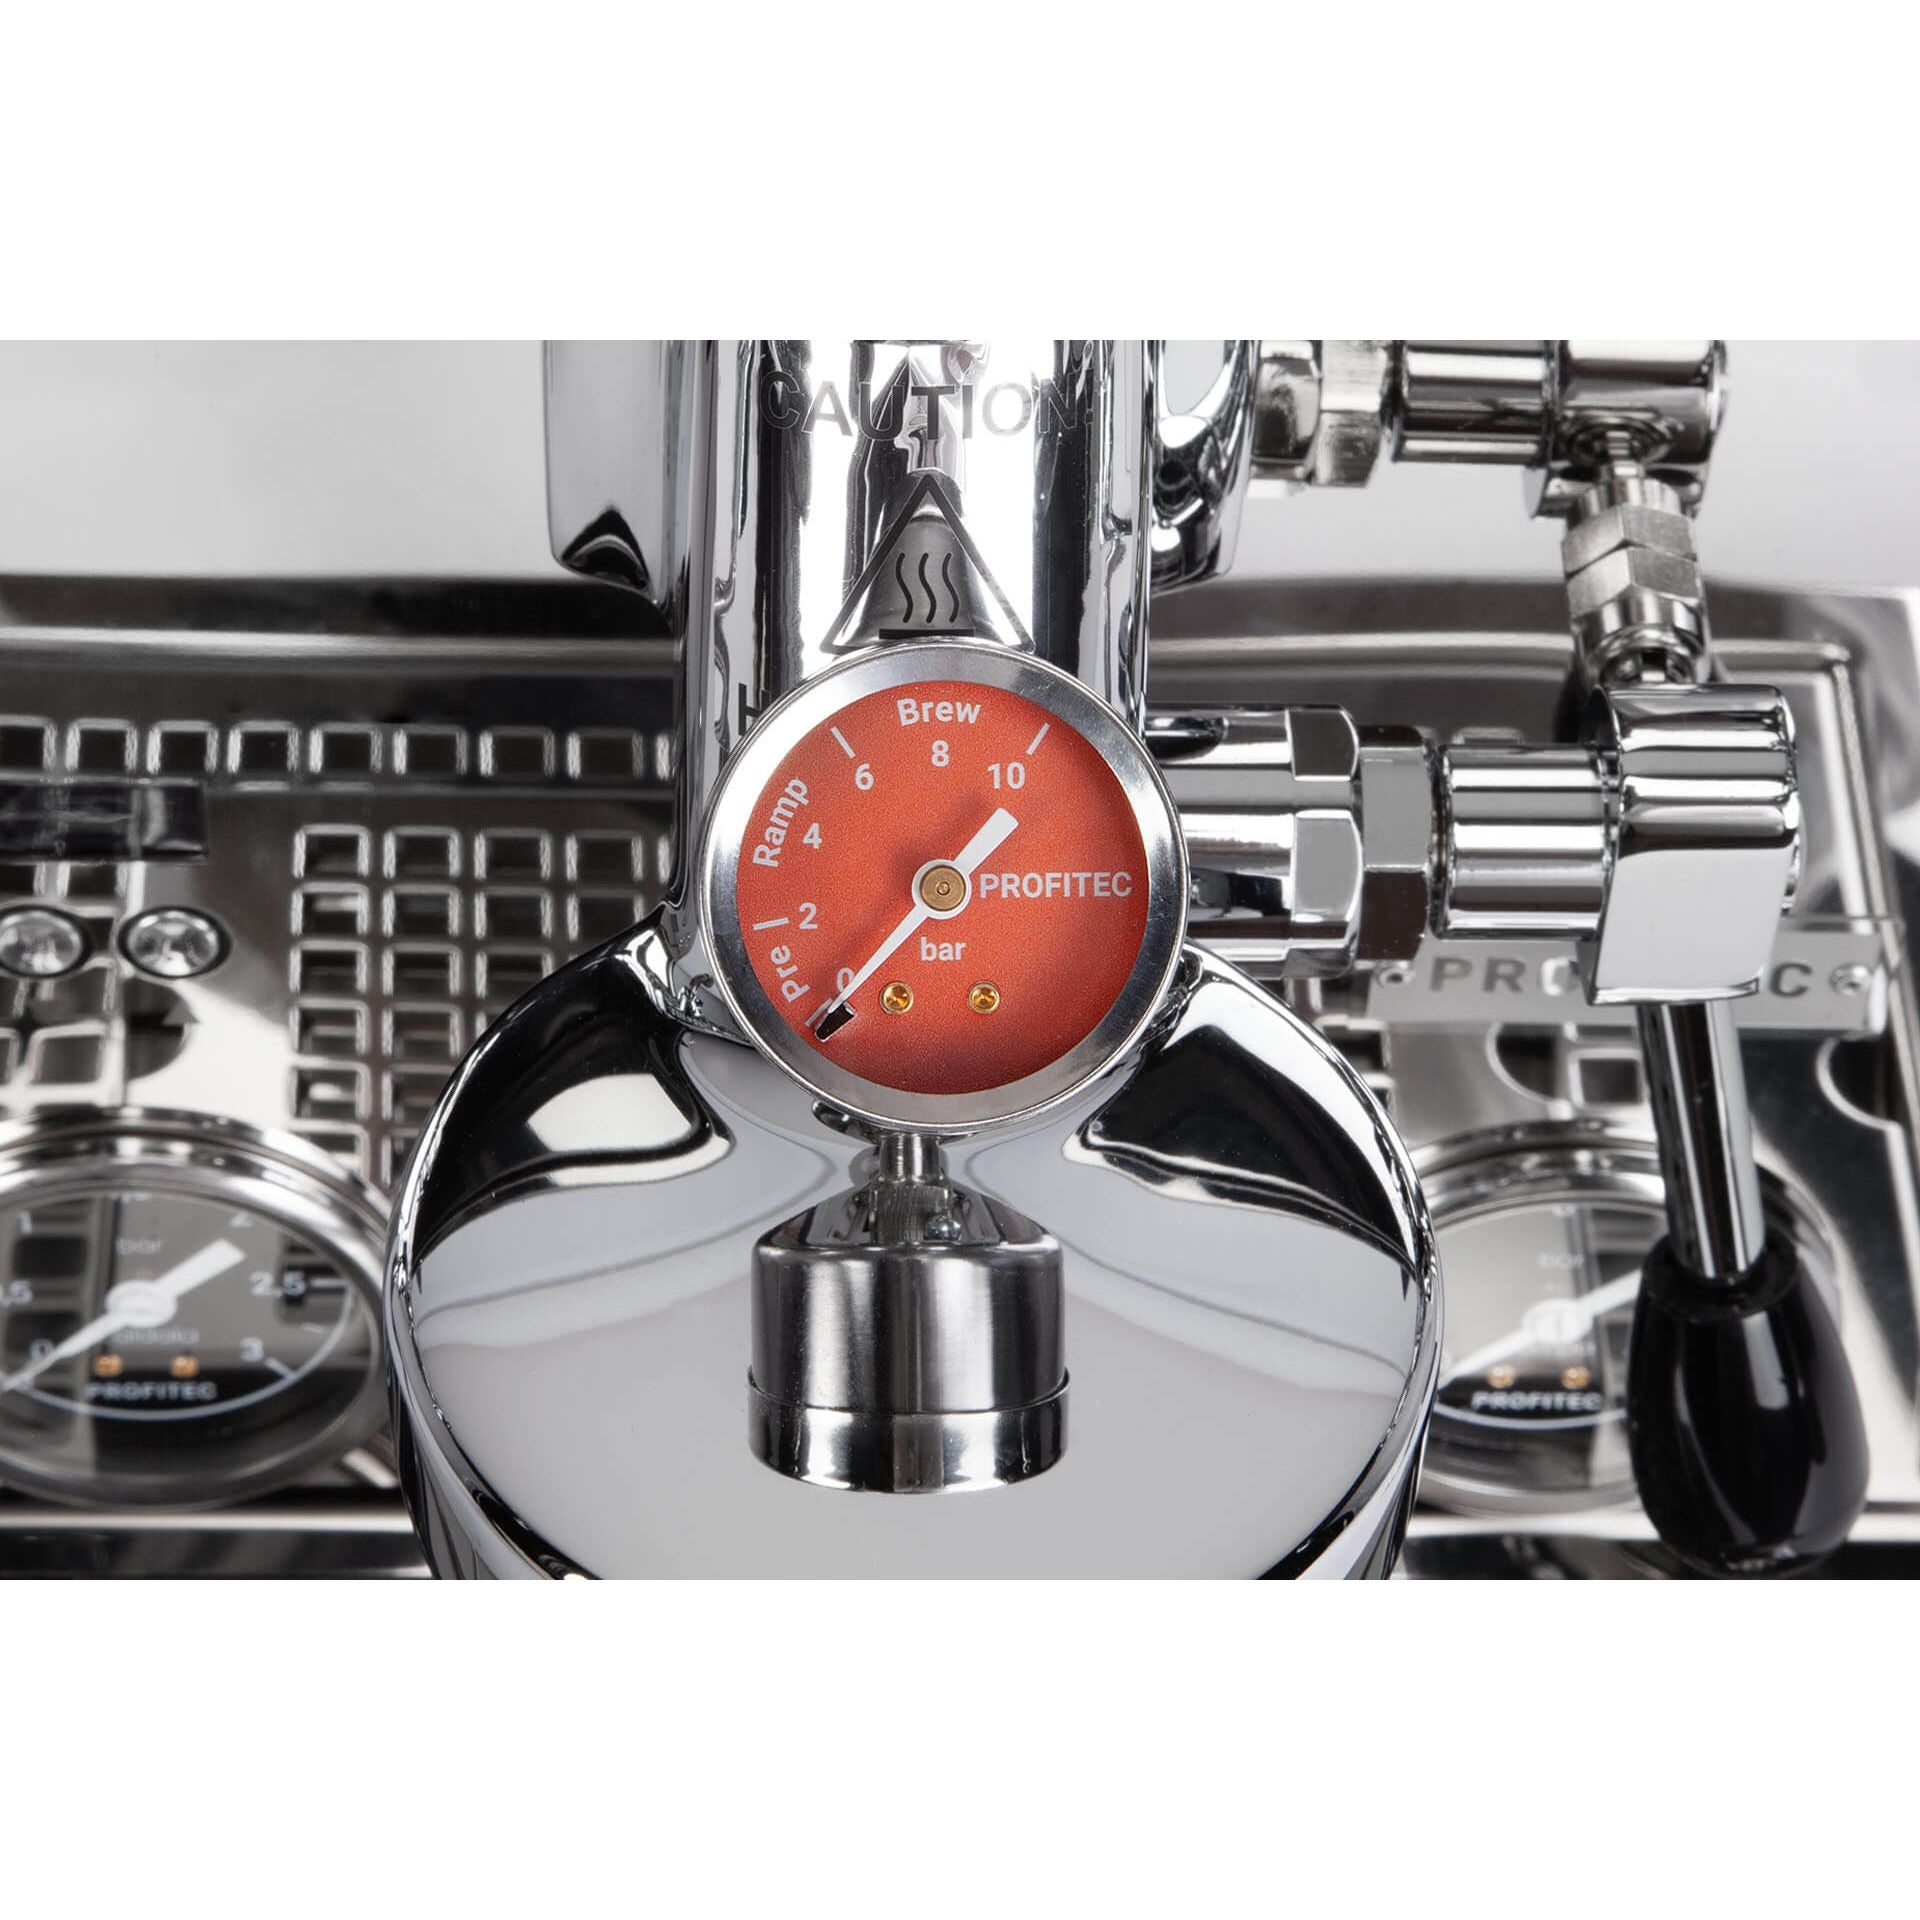 Profitec DRIVE (Pro 700 - NEU) Dualboiler Siebträgermaschine Fast Heat Up Espressomaschinen Profitec    - Rheinland.Coffee